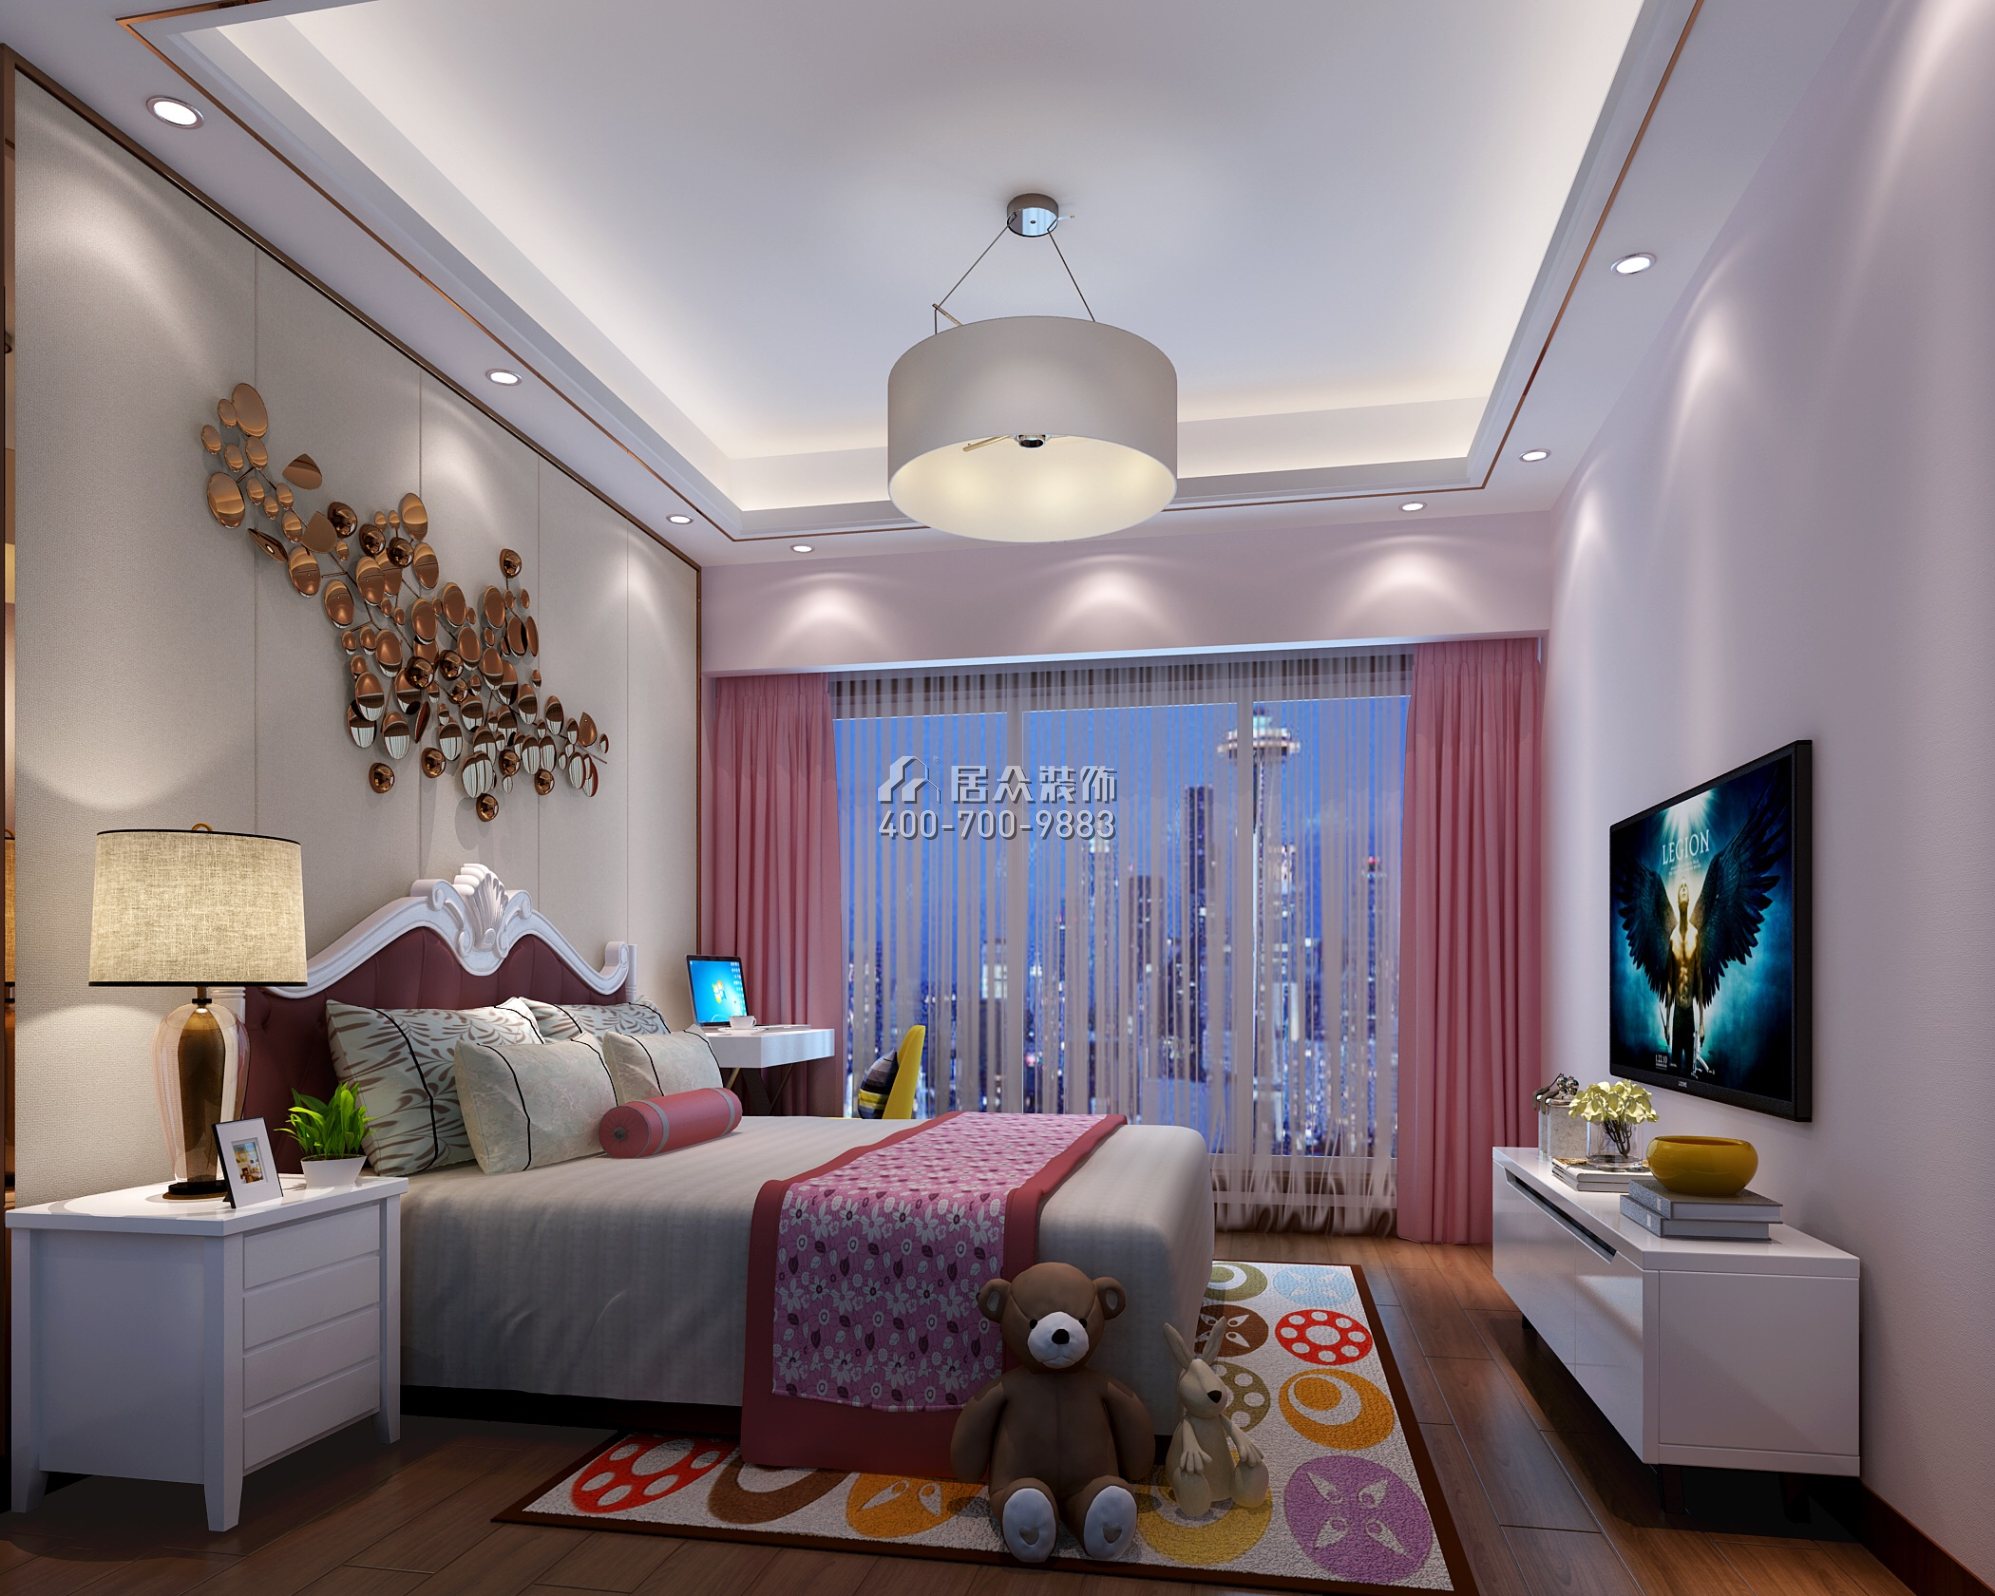 中洲中央公園二期150平方米新古典風格平層戶型臥室裝修效果圖